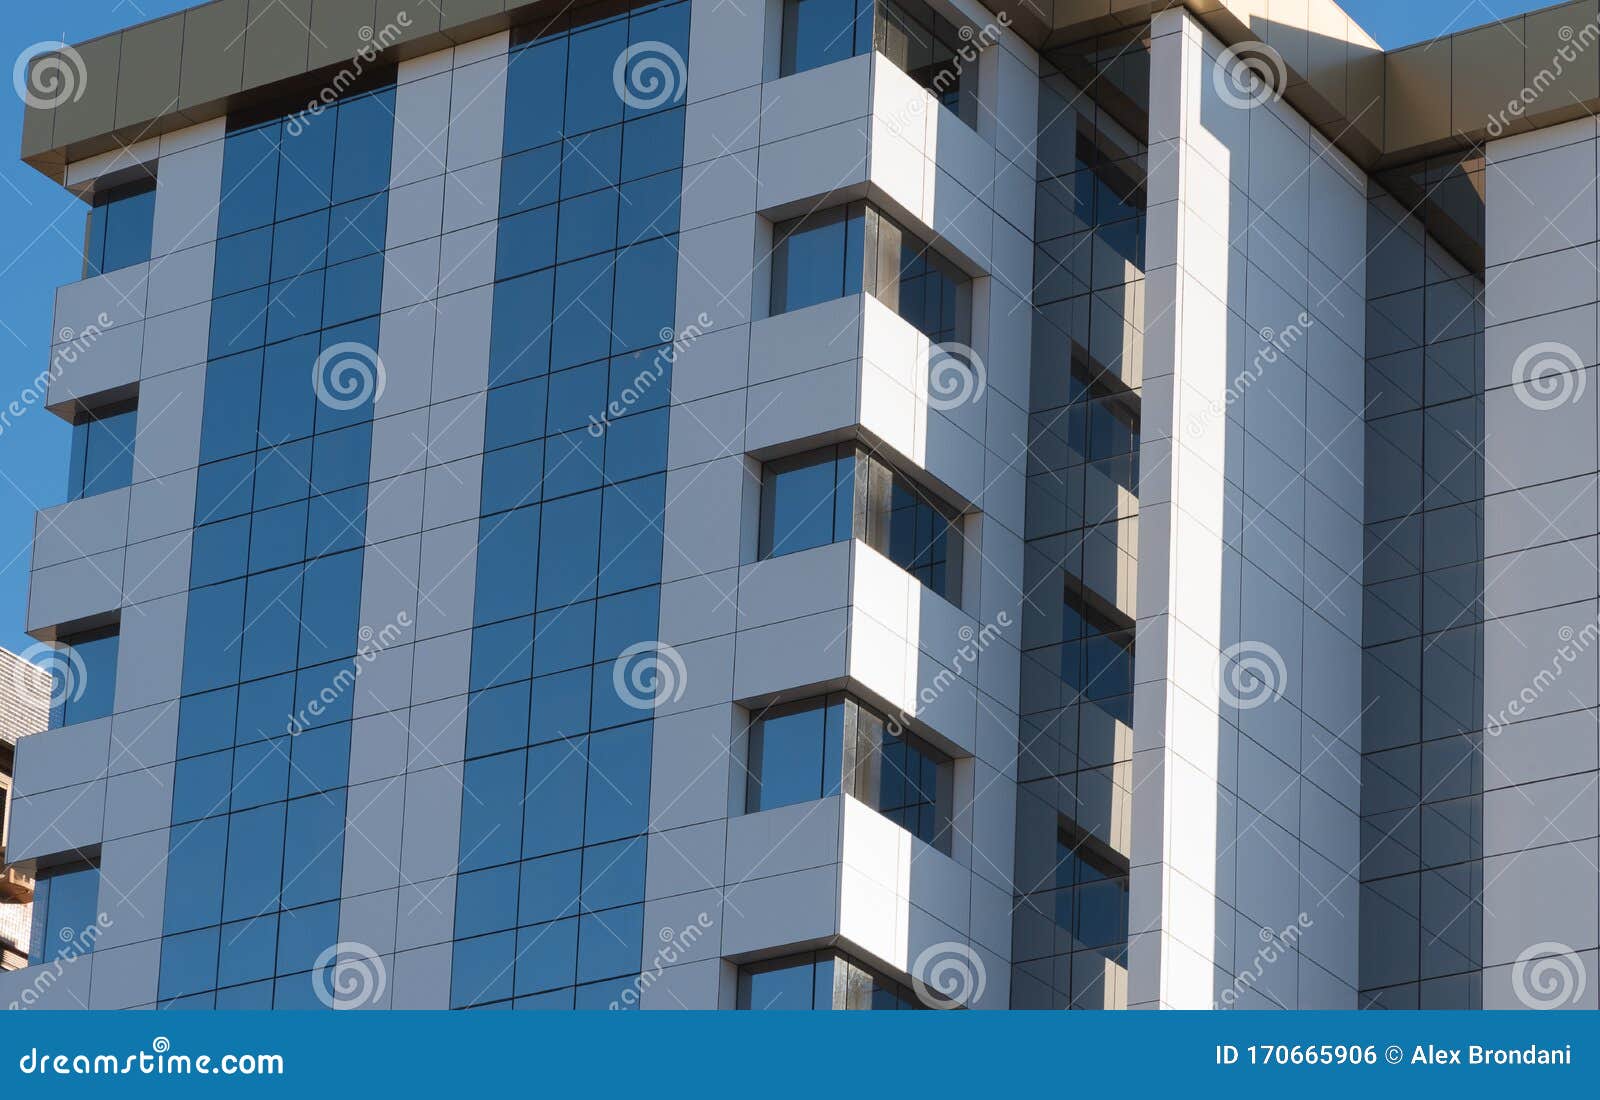 the glazed faÃÂ§ade of the residential building 04